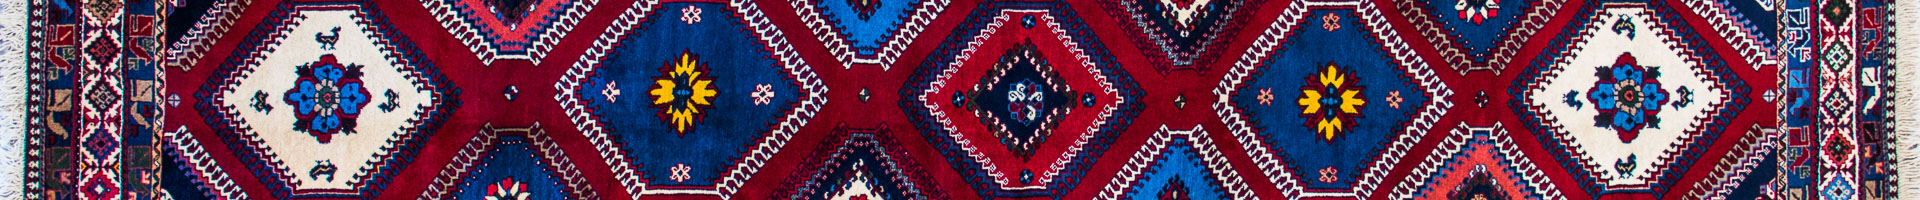 Yalameh Persian Carpet Rug N1Carpet Montreal Canada Tapis Persan